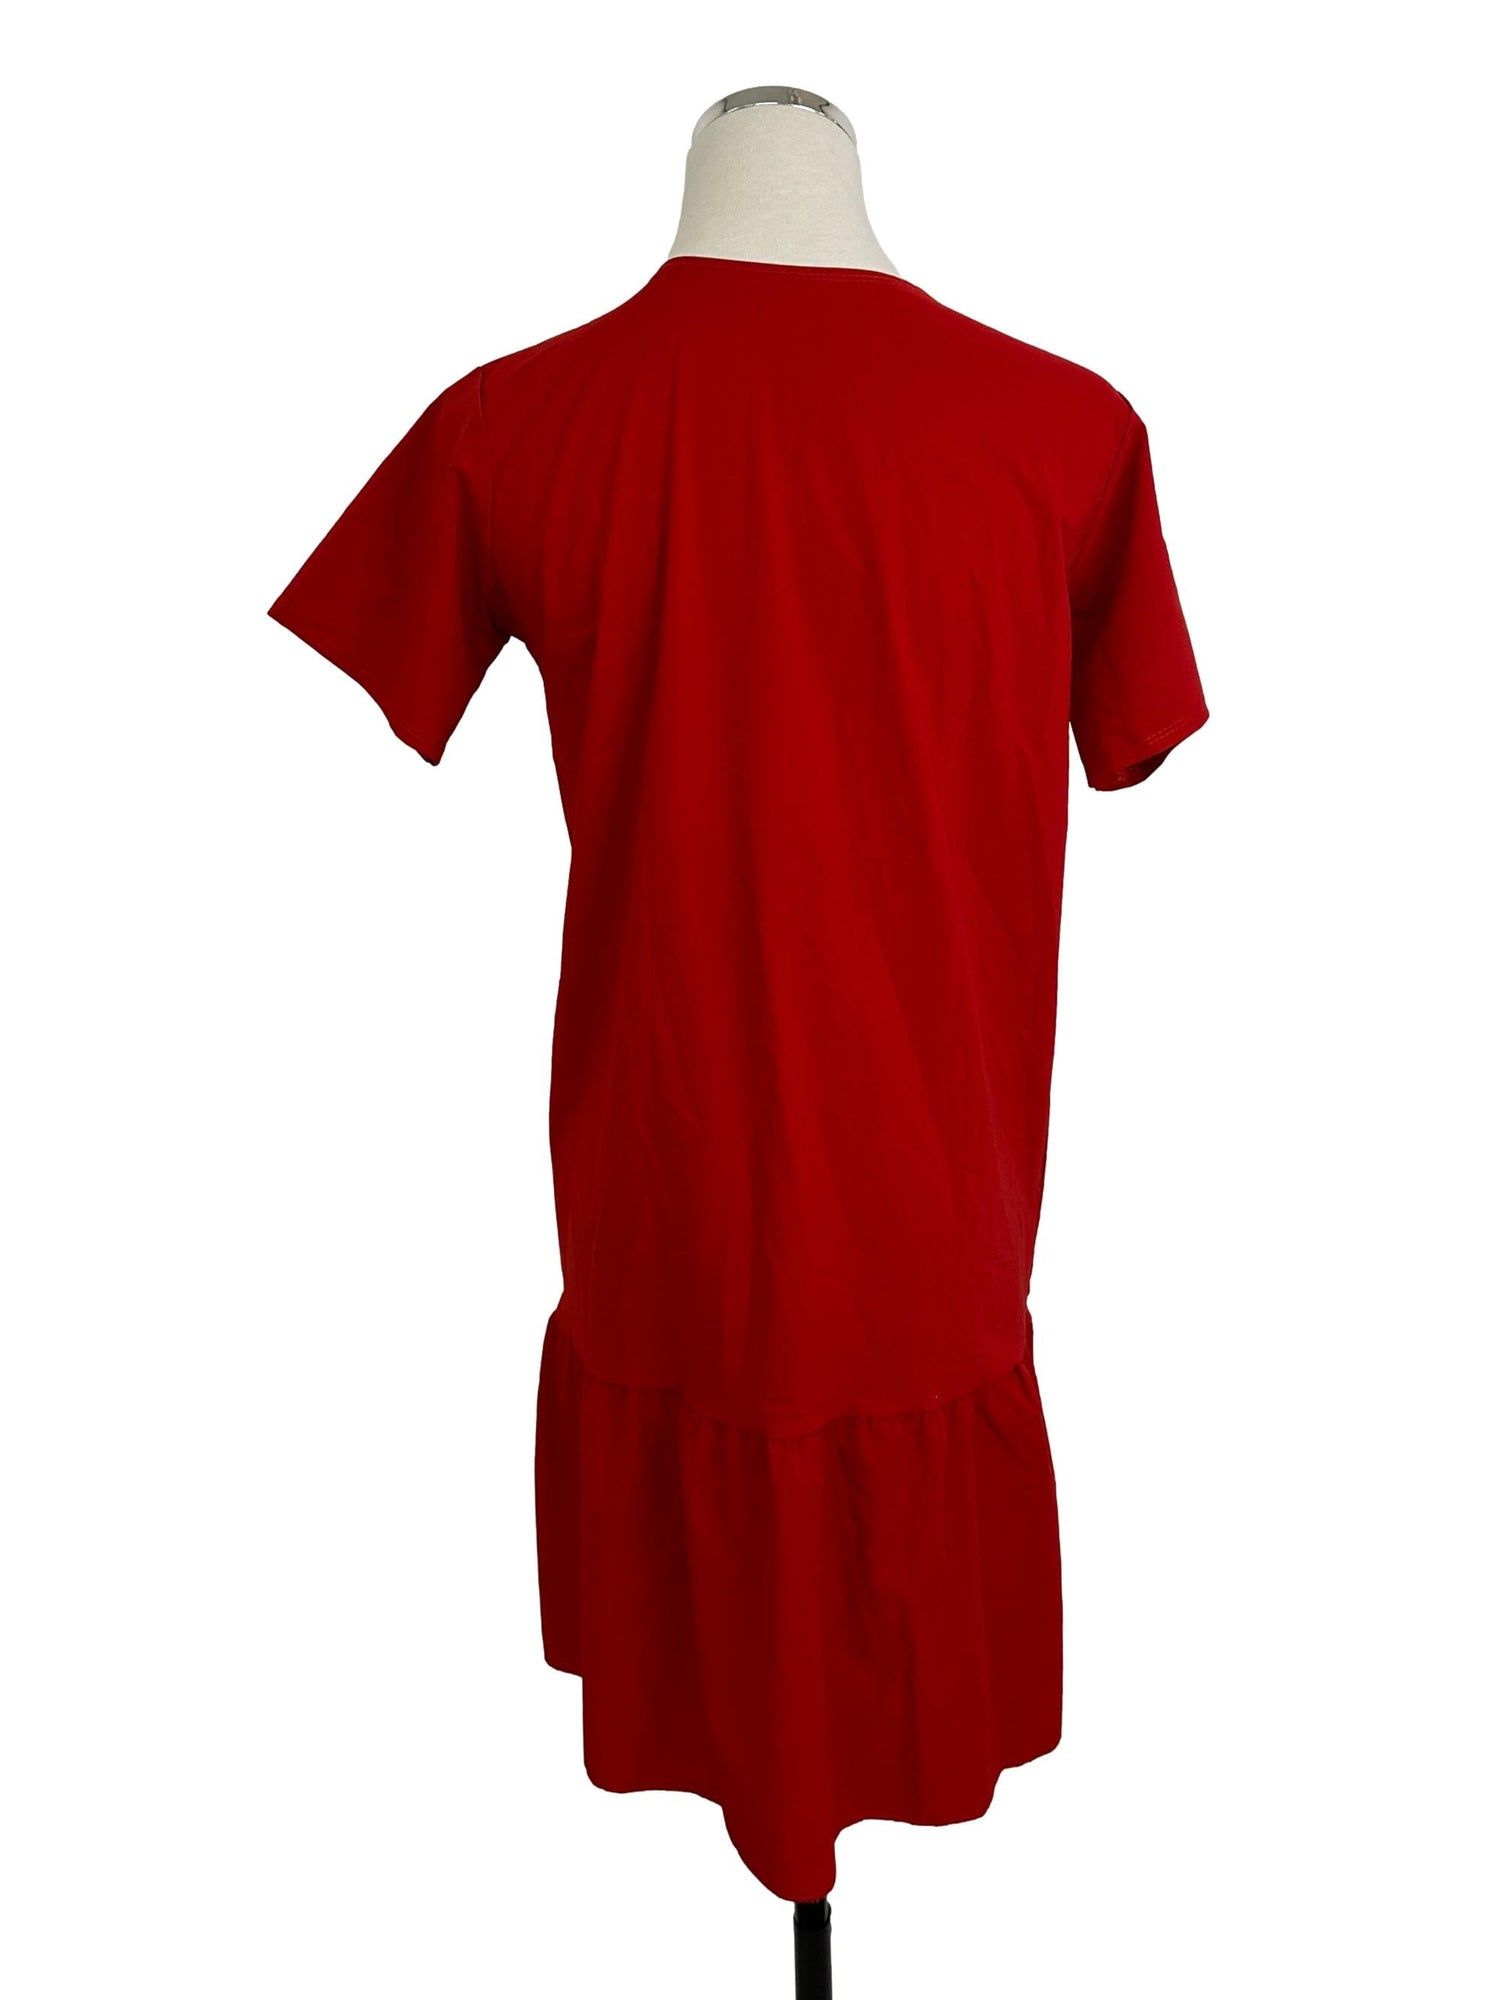 Long plain jersey dress - Cherry red